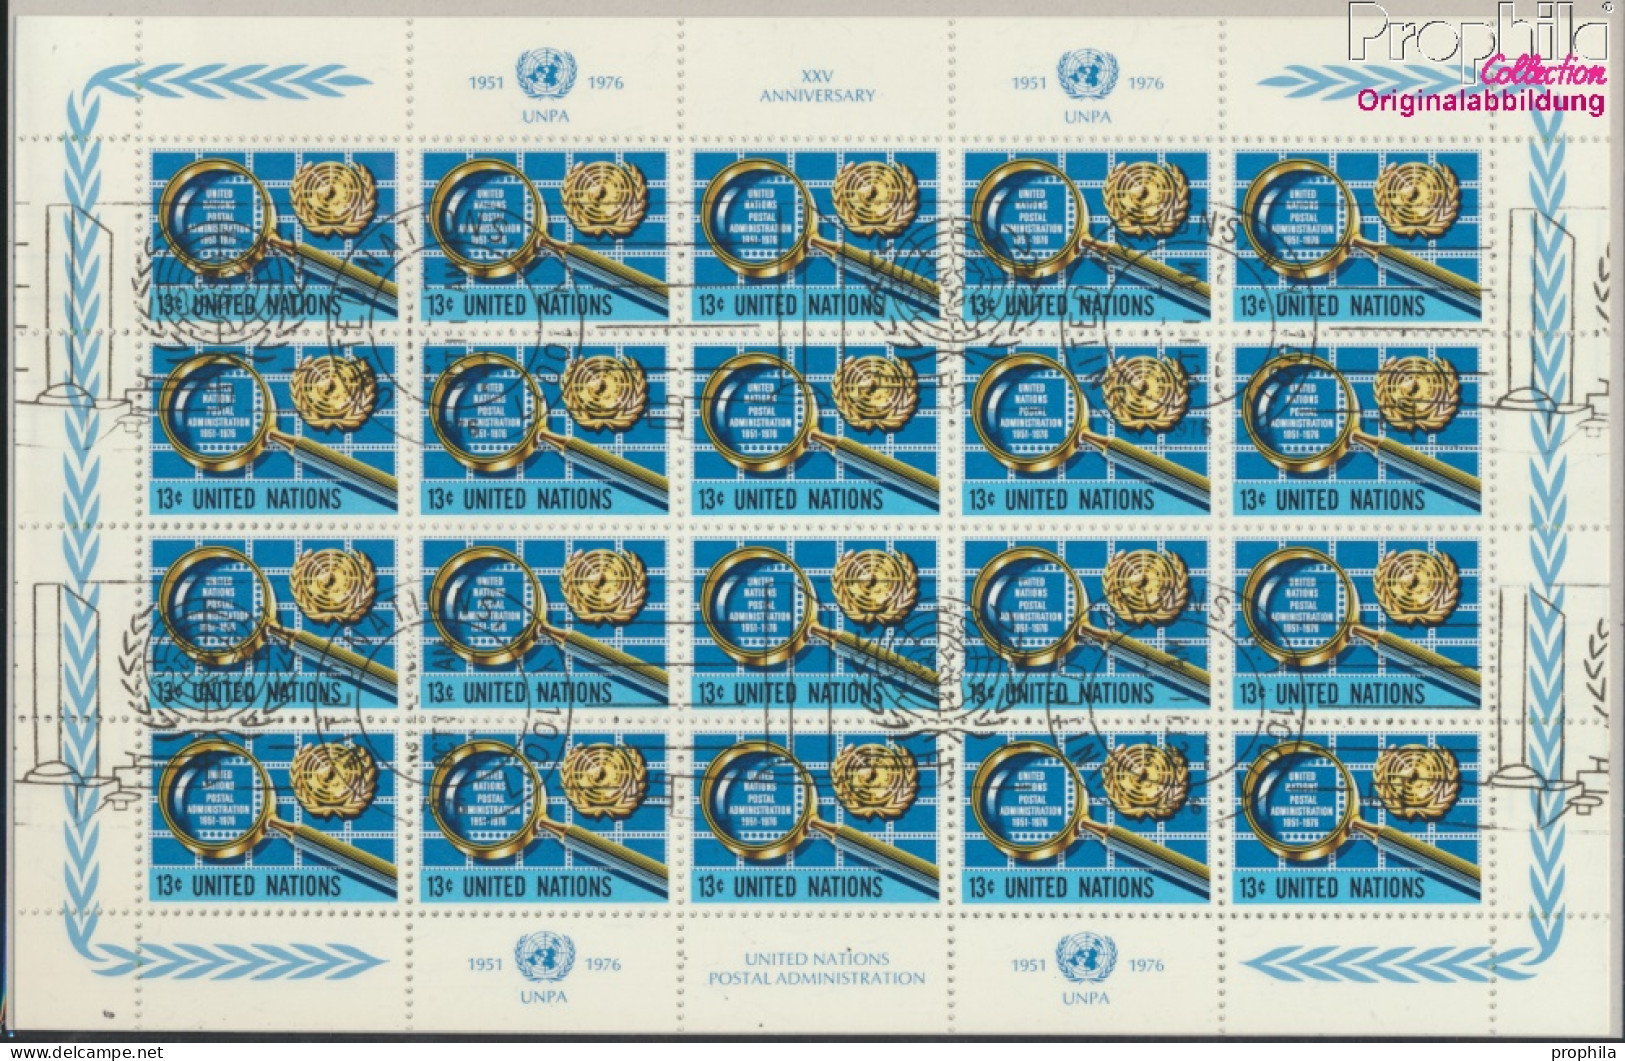 UNO - New York 299Klb-300Klb Kleinbogen (kompl.Ausg.) Gestempelt 1976 Postverwaltung (10050723 - Gebruikt